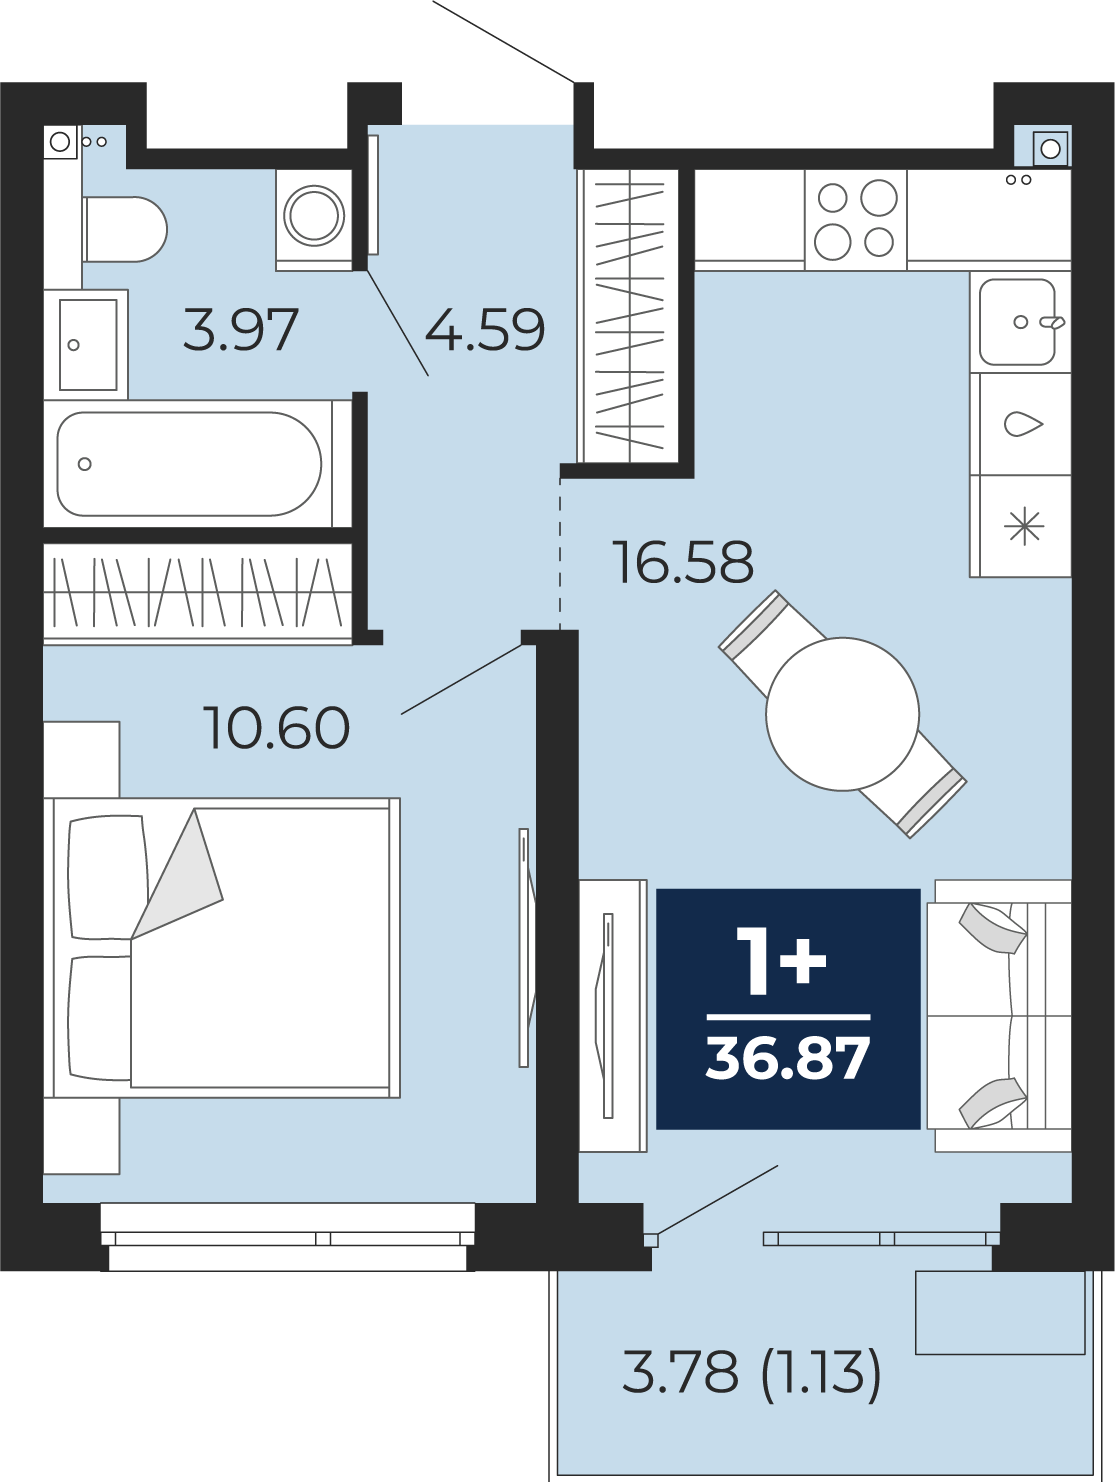 Квартира № 236, 1-комнатная, 36.87 кв. м, 13 этаж